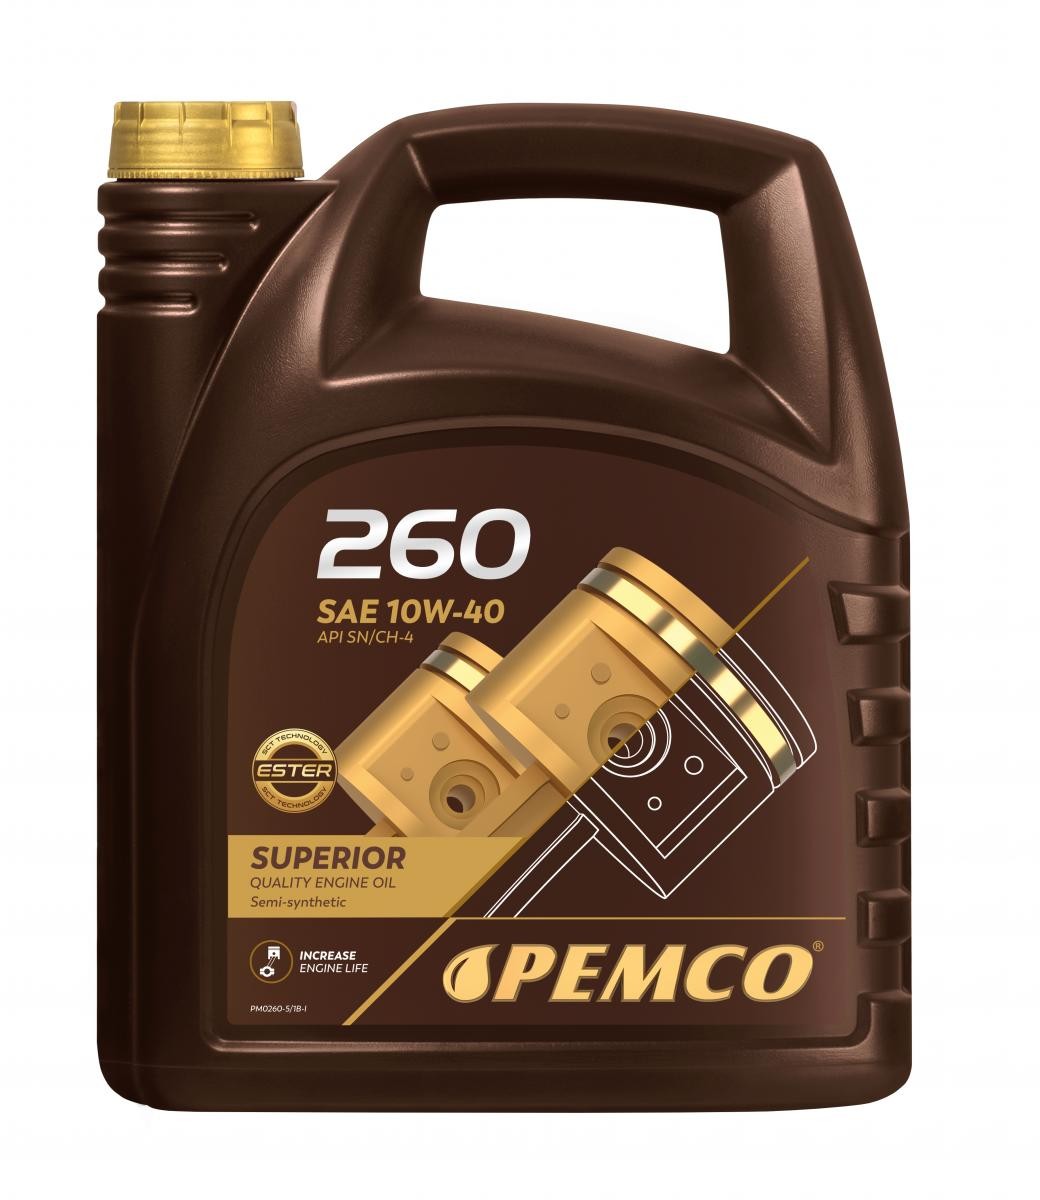 PEMCO iDRIVE 200, iDRIVE 260 PM0260-5 Motoröl 10W-40, 5l, Teilsynthetiköl